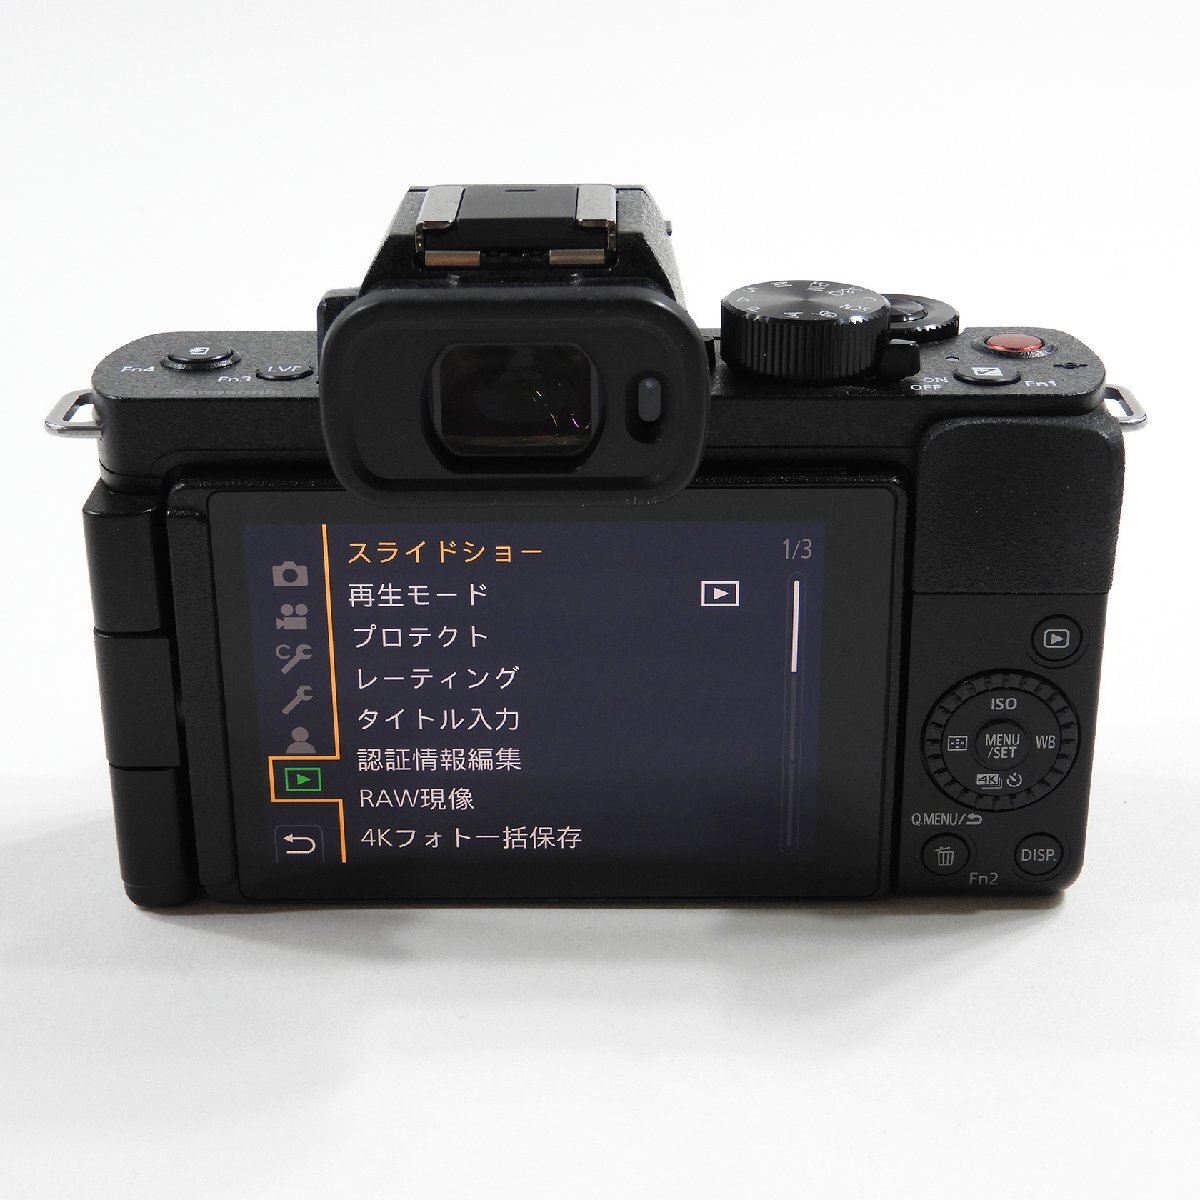  с ящиком Panasonic Panasonic LUMIX DC-G100V беззеркальный цифровой однообъективный камера Junk #18781 хобби коллекционный набор цифровая камера 